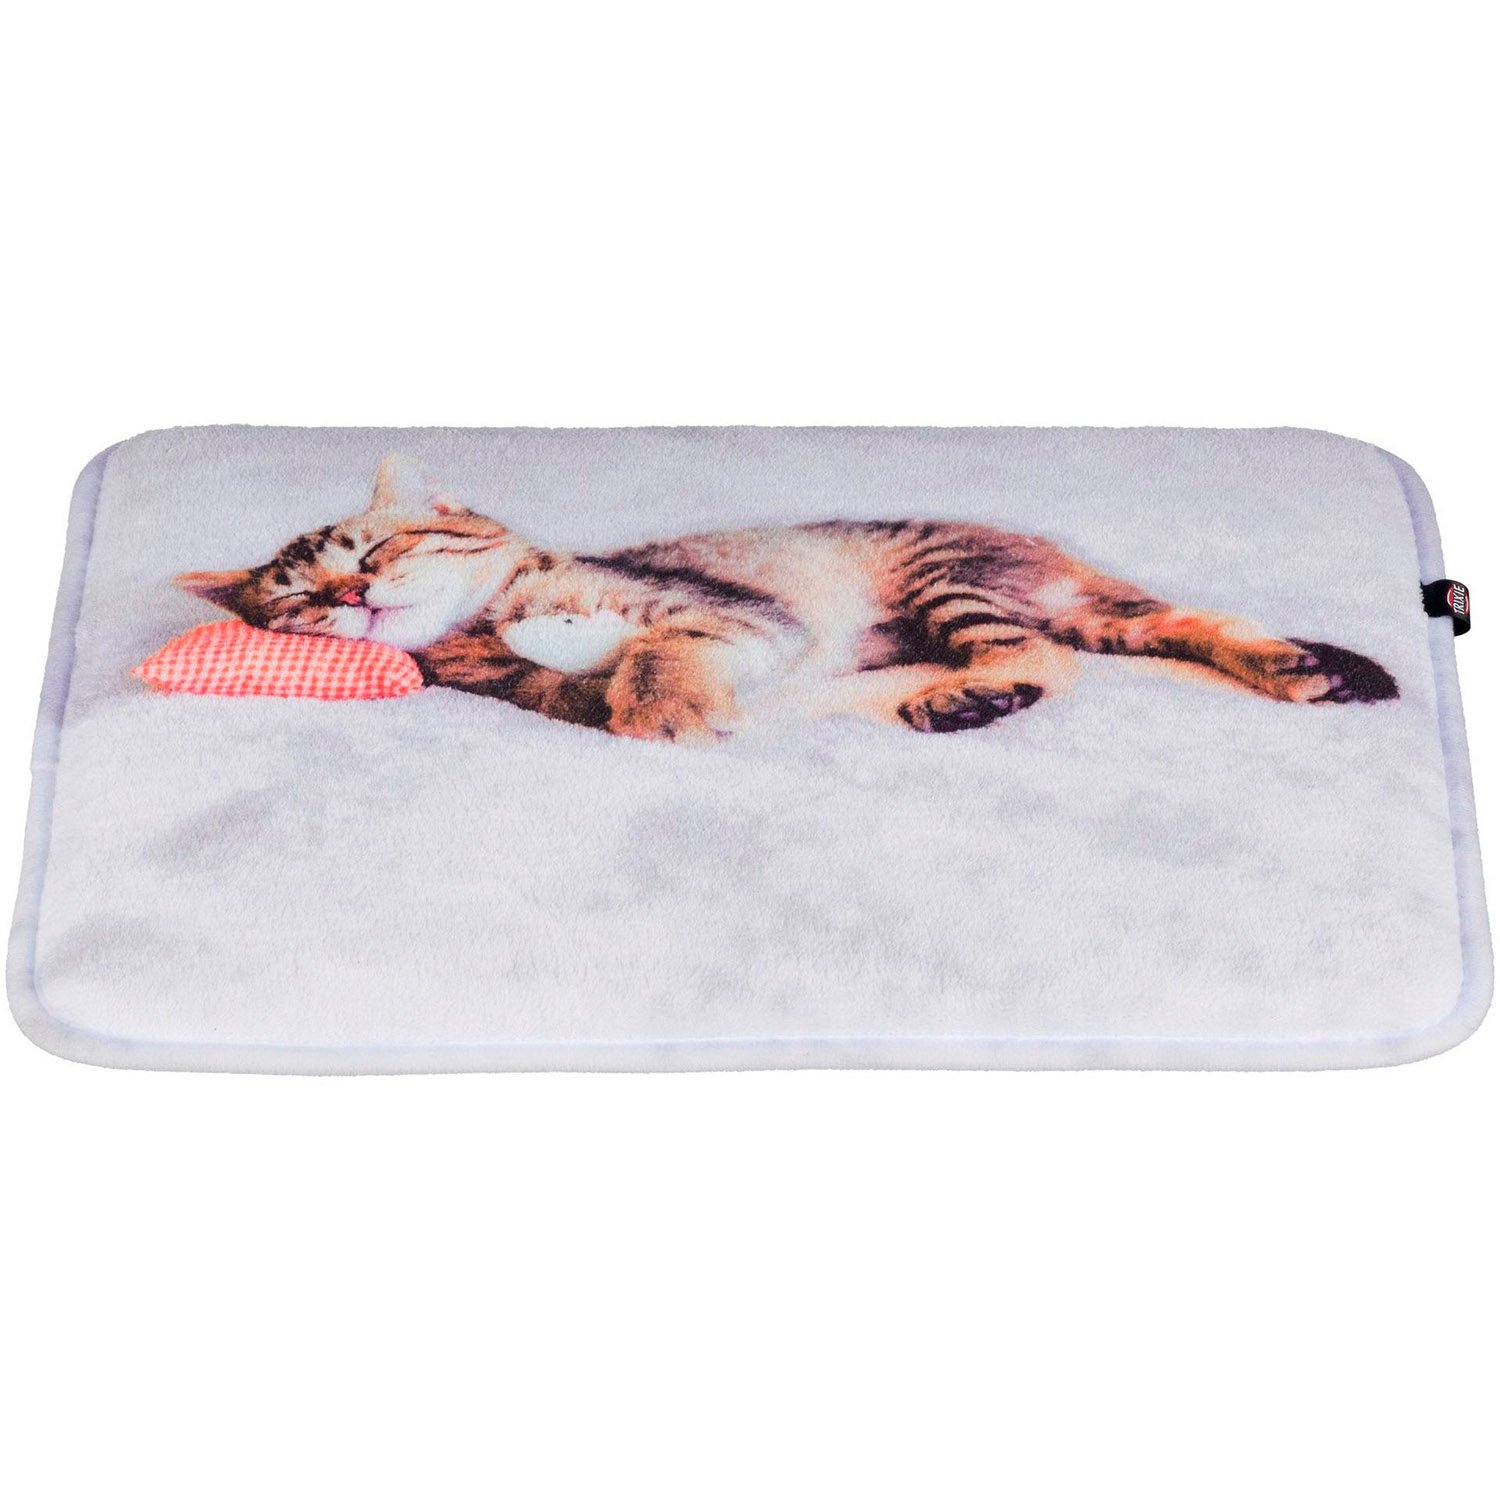 Лежак для кошек Trixie Nani, 40х30 см, серый (37126) - фото 1